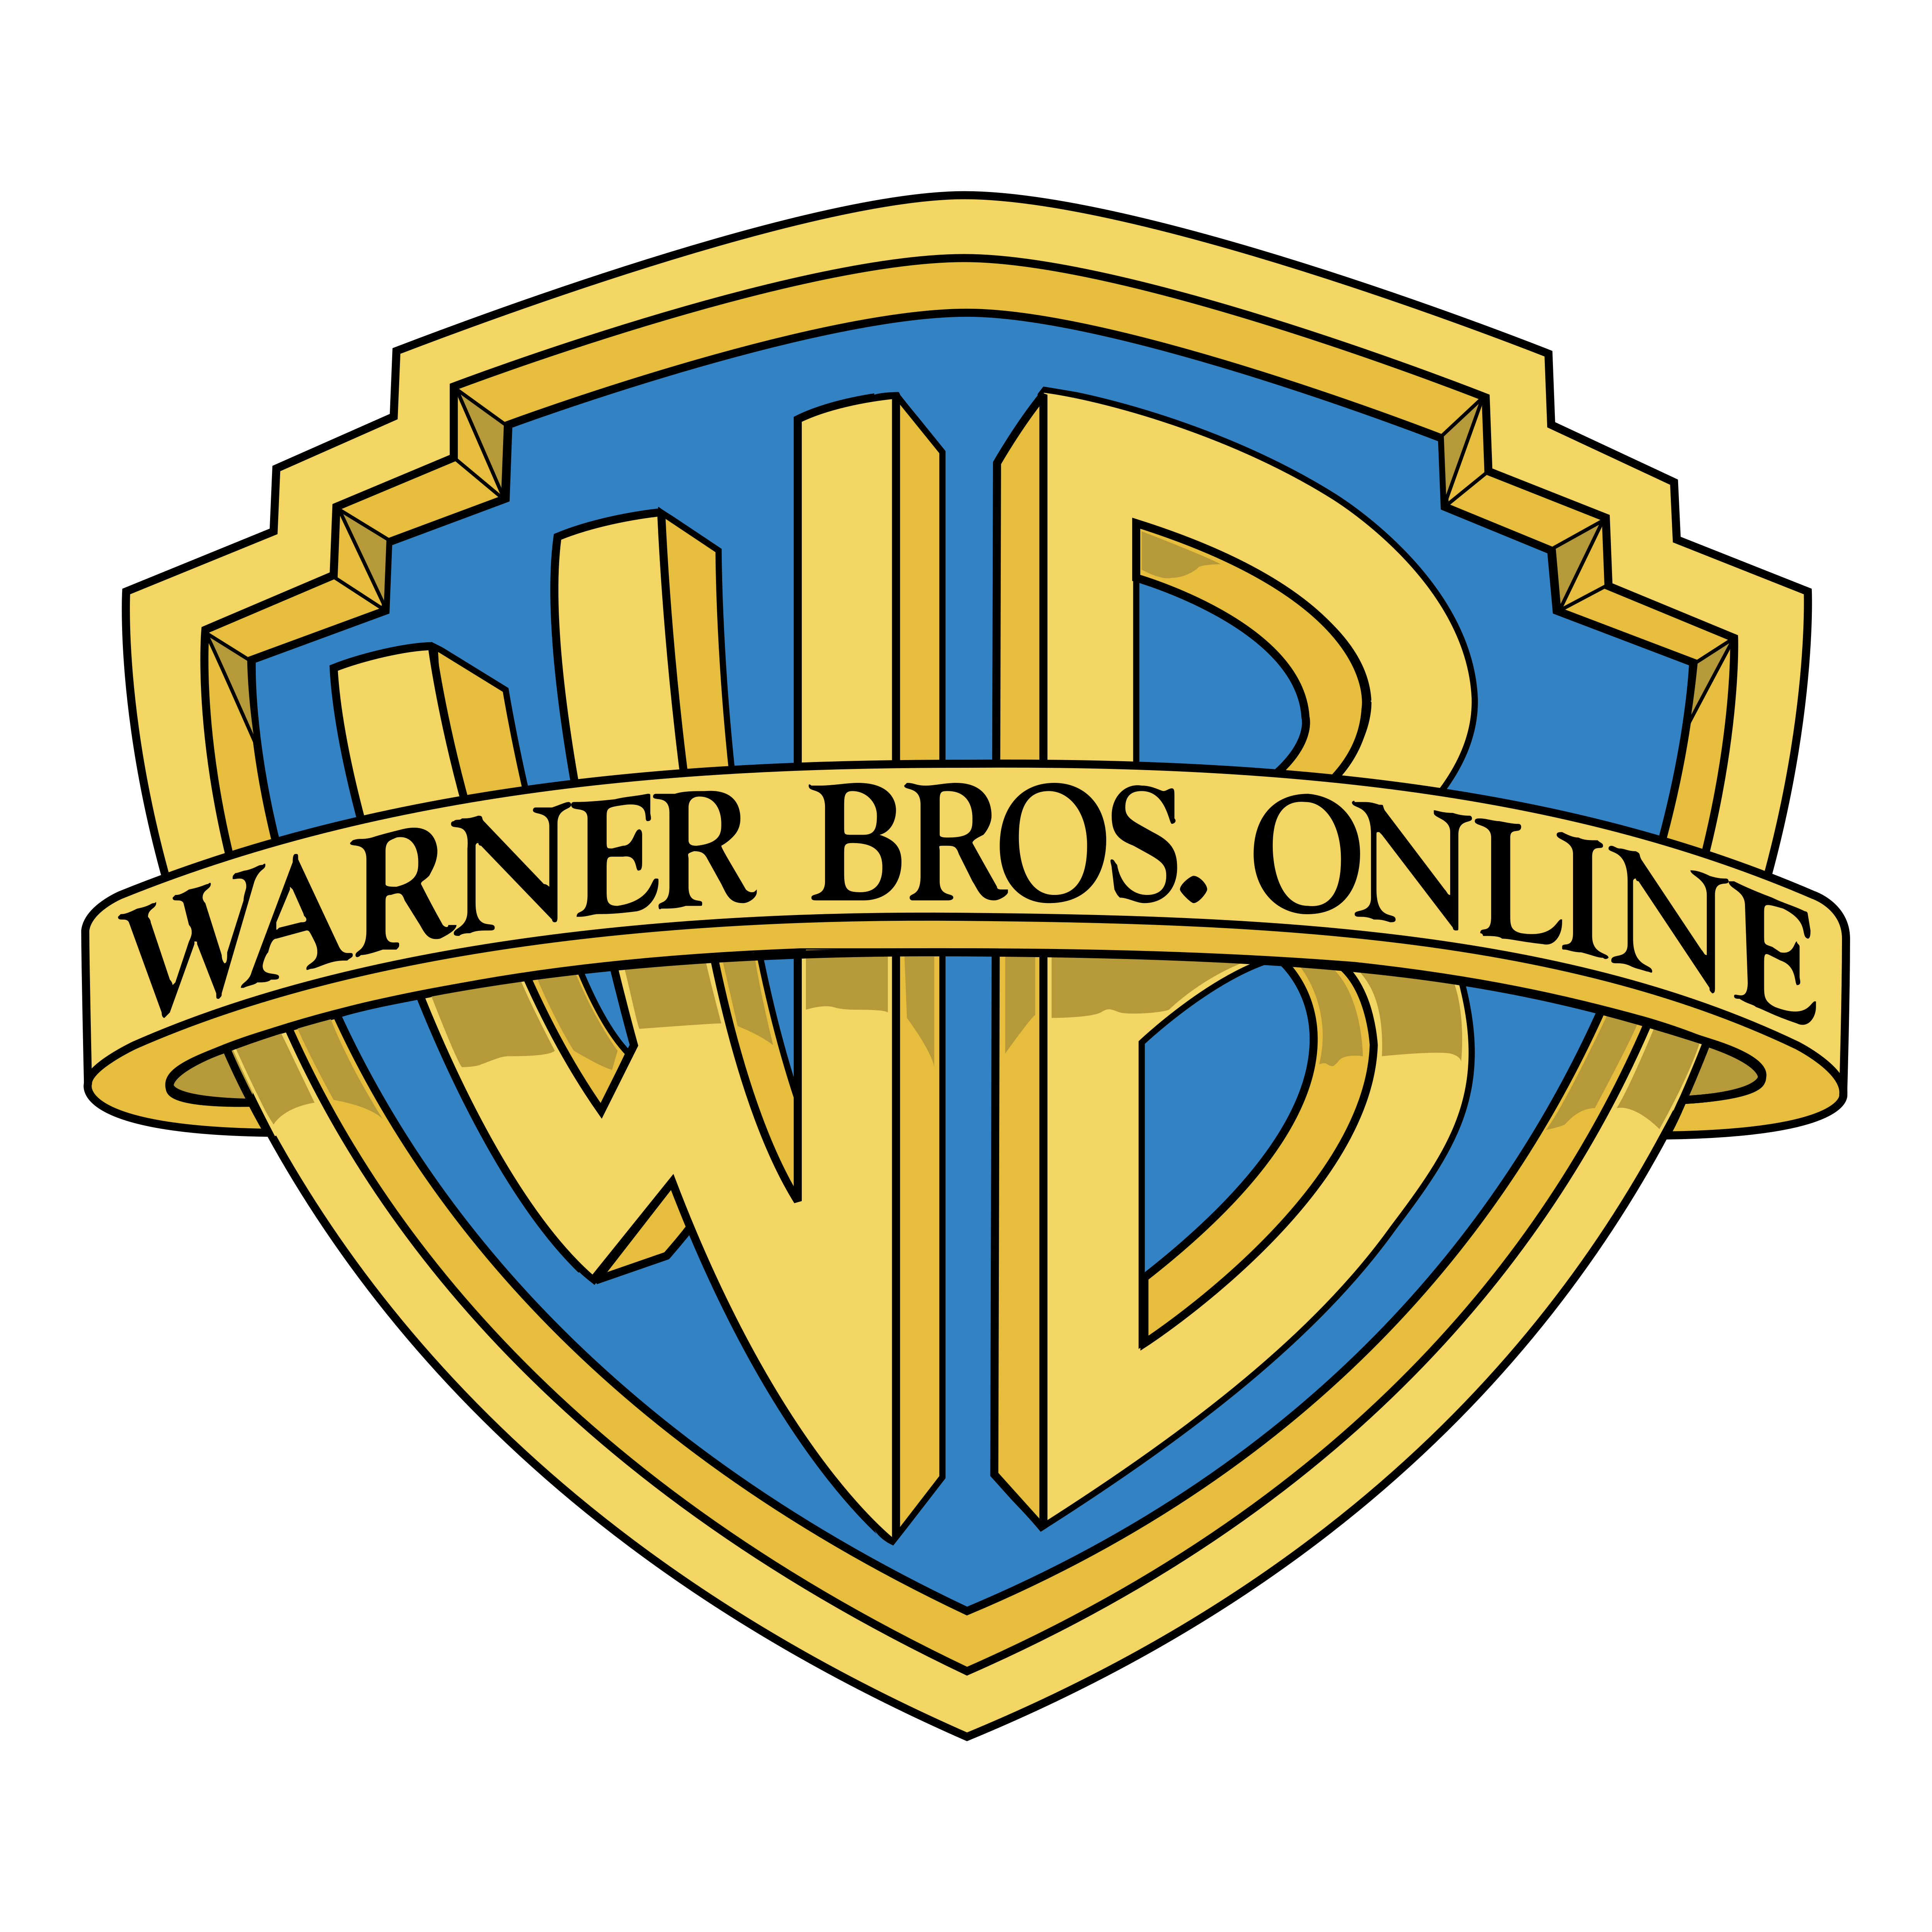 WB (Warner Bros.) - Logos Download